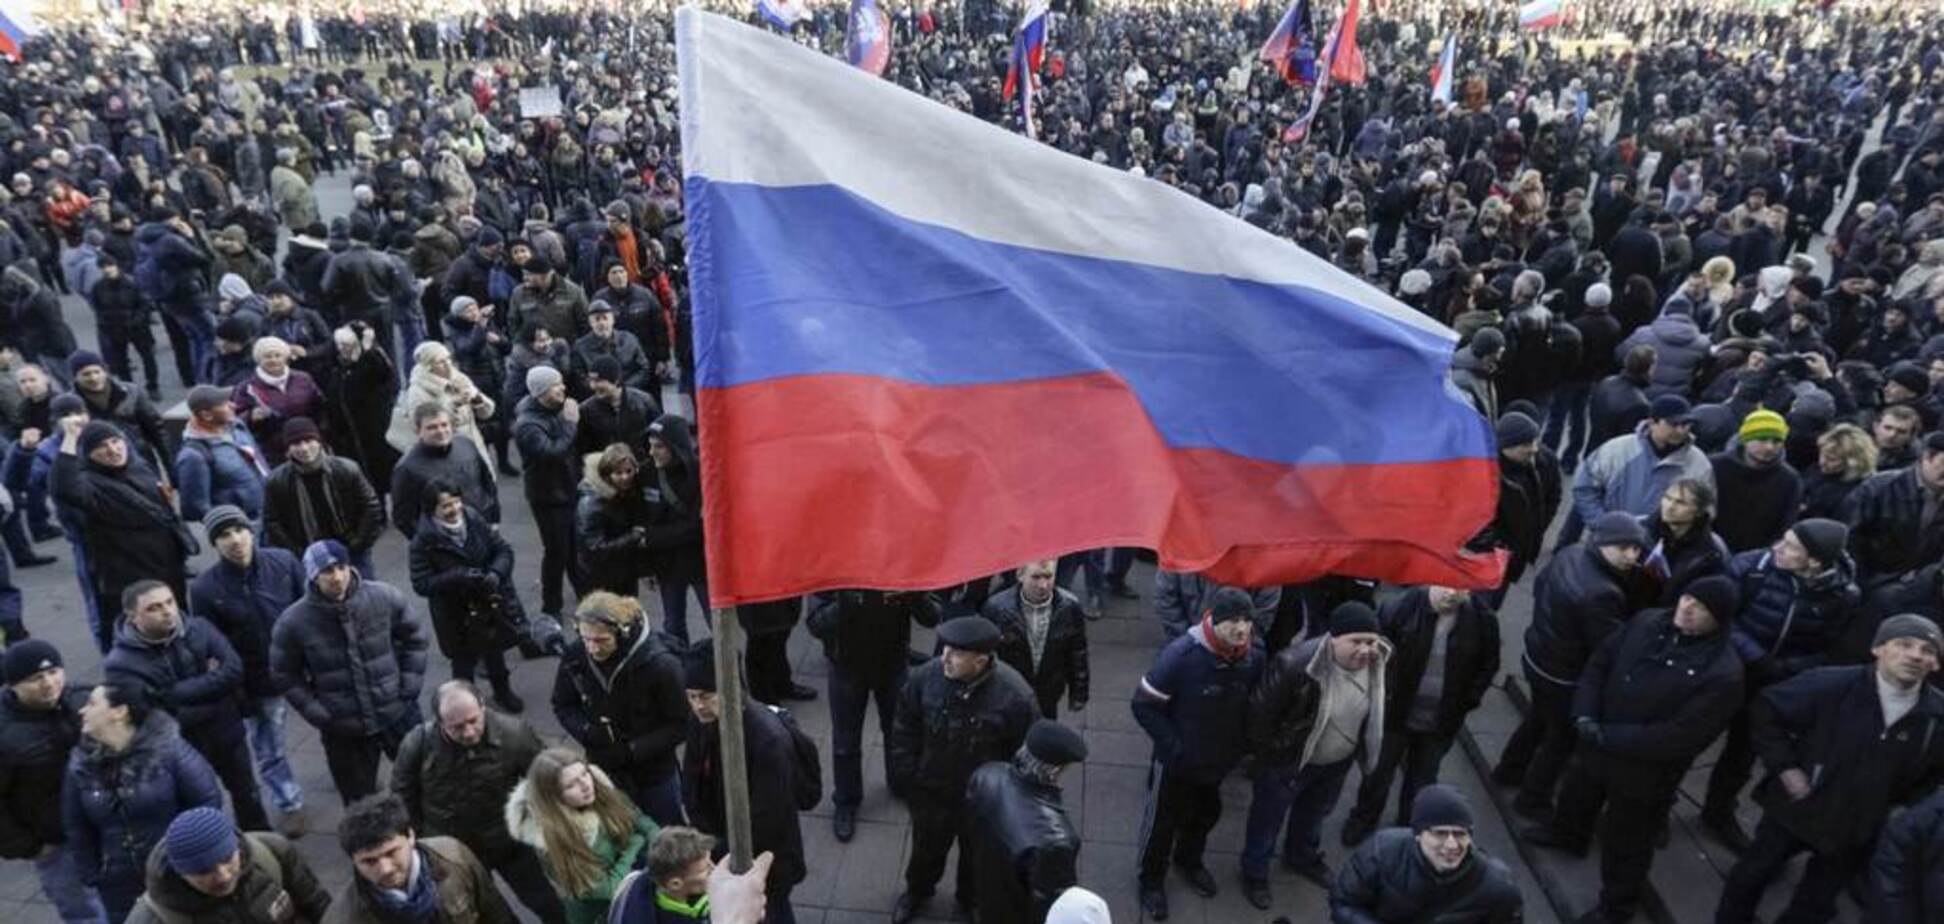 Над Донецком внезапно подняли флаги России: что произошло